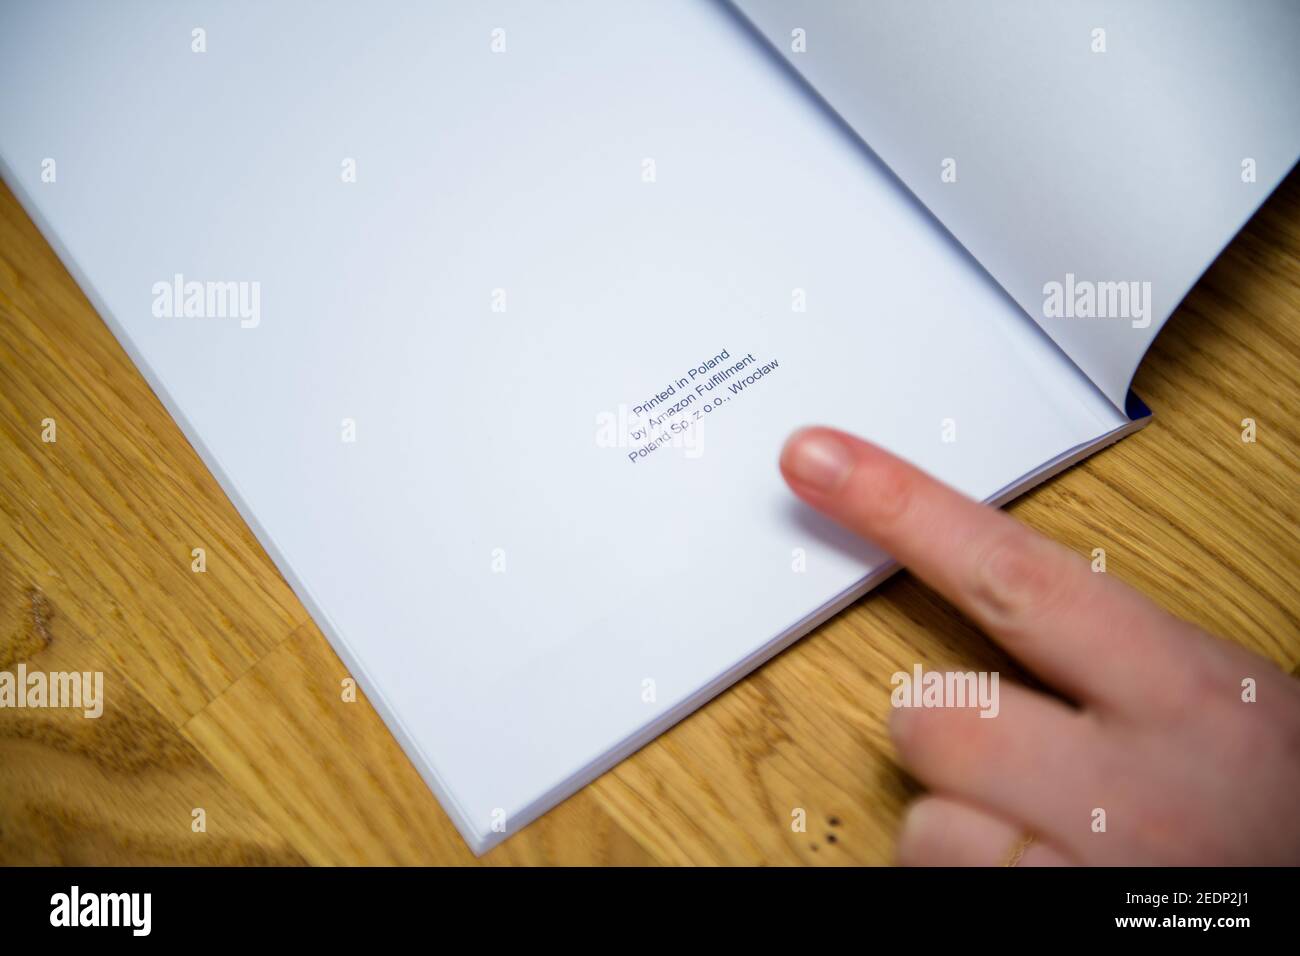 Paris, Frankreich - 14. Feb 2021: POV Frau zeigt mit dem Finger den Text am Ende des Buches gedruckt in Polen von Amazon Versand Polen SP z oo Wroclaw - Self Publishing Buch Stockfoto